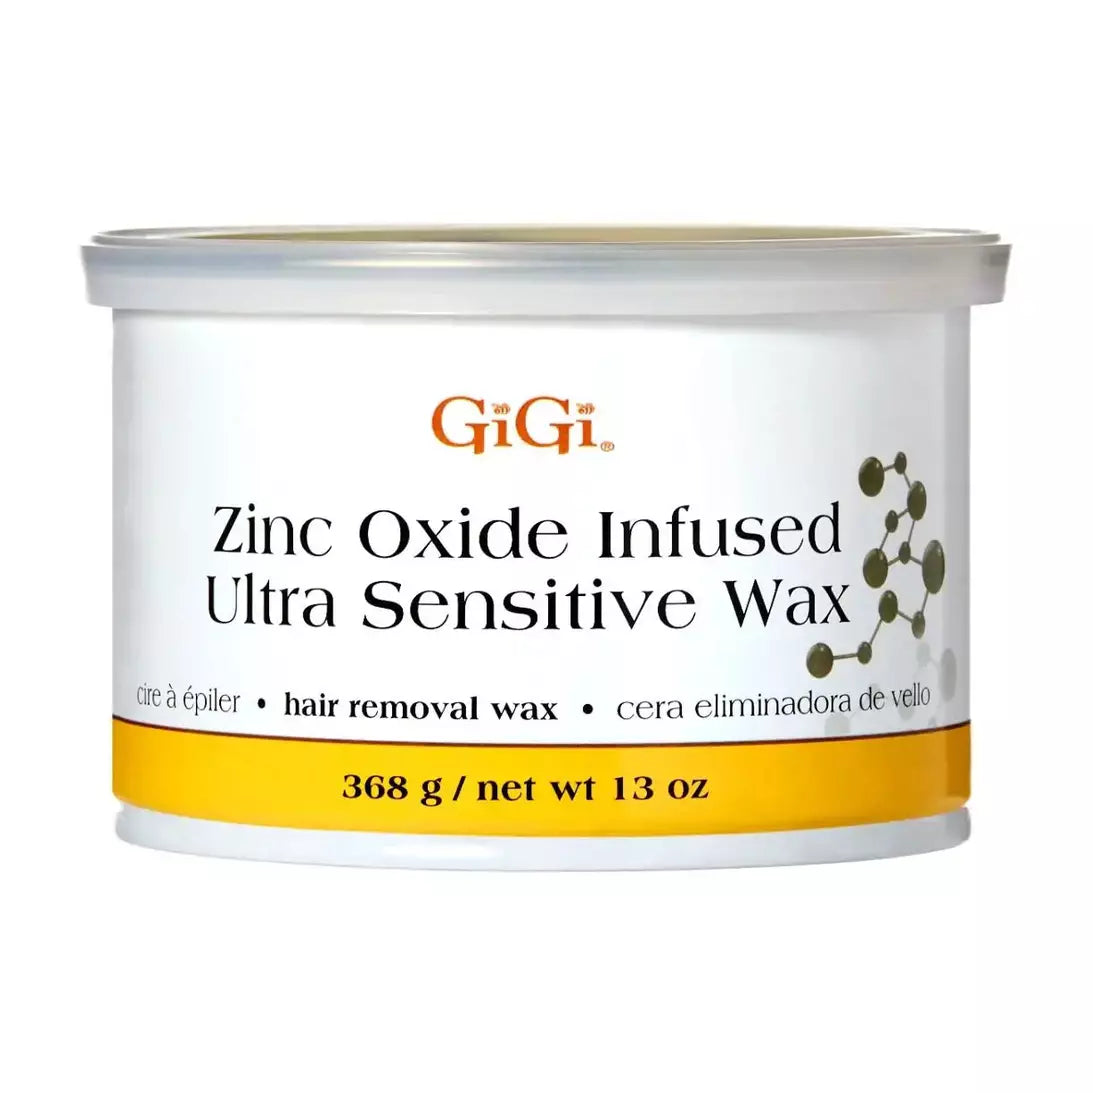 Gigi Zinc Oxide Ultra Sensitive Wax 13oz